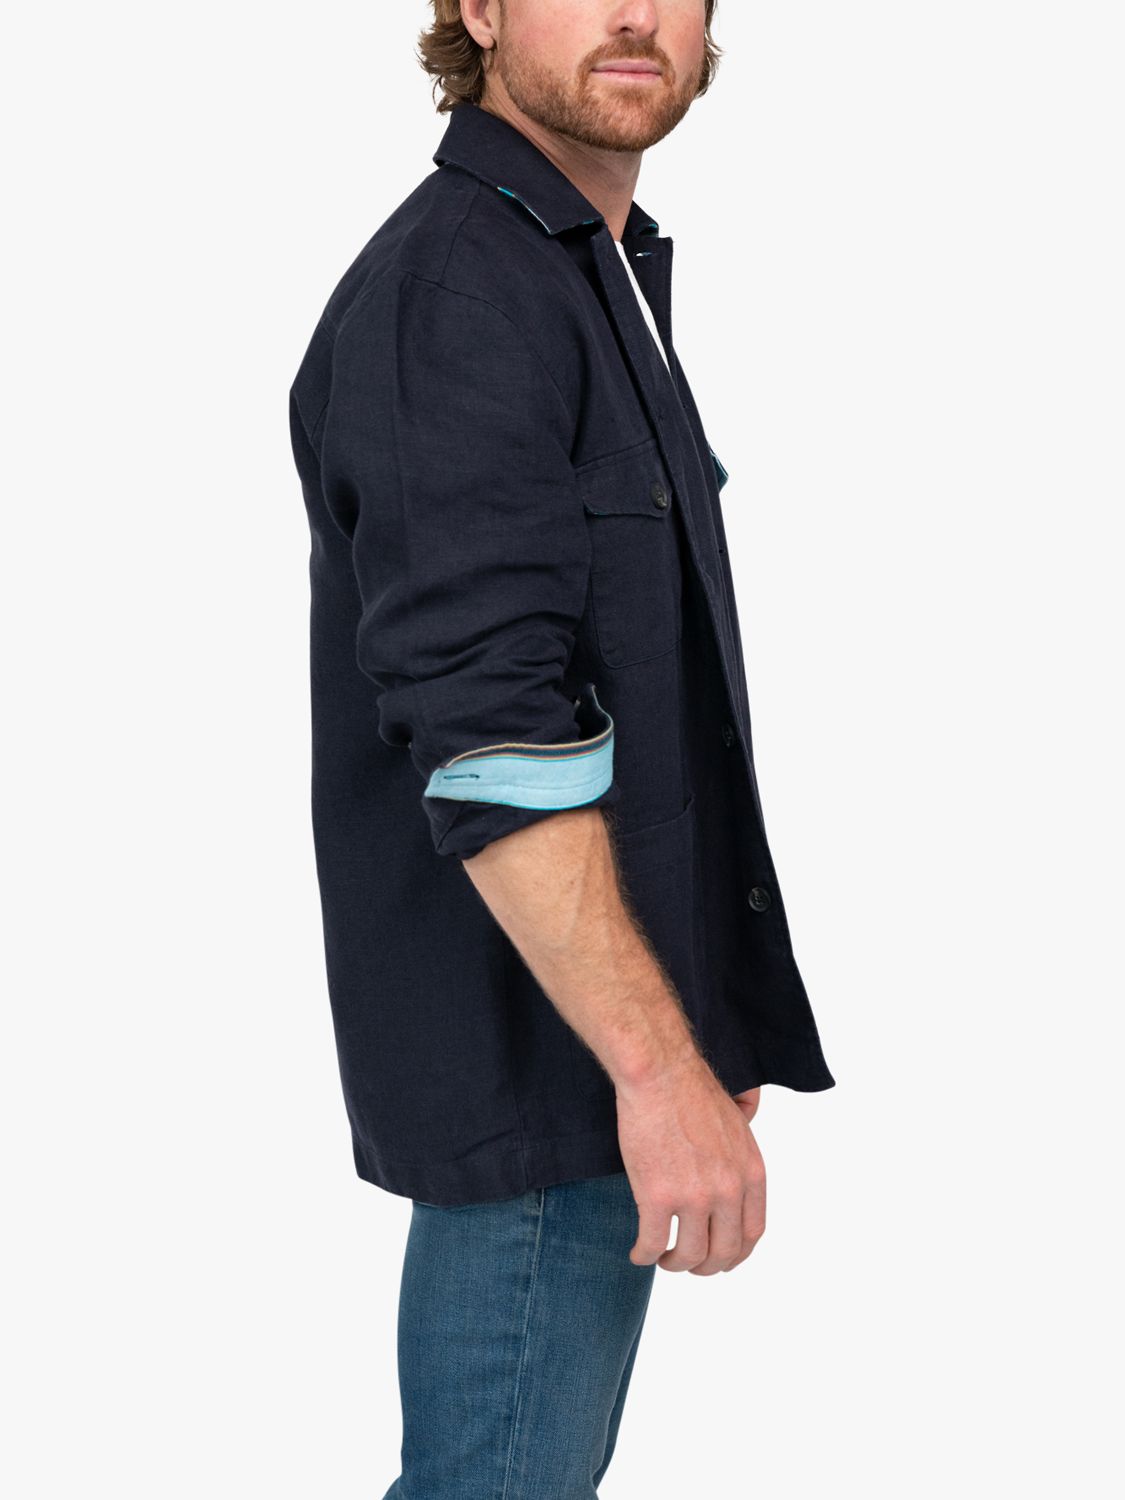 Buy KOY Linen Overshirt Jacket, Navy Online at johnlewis.com